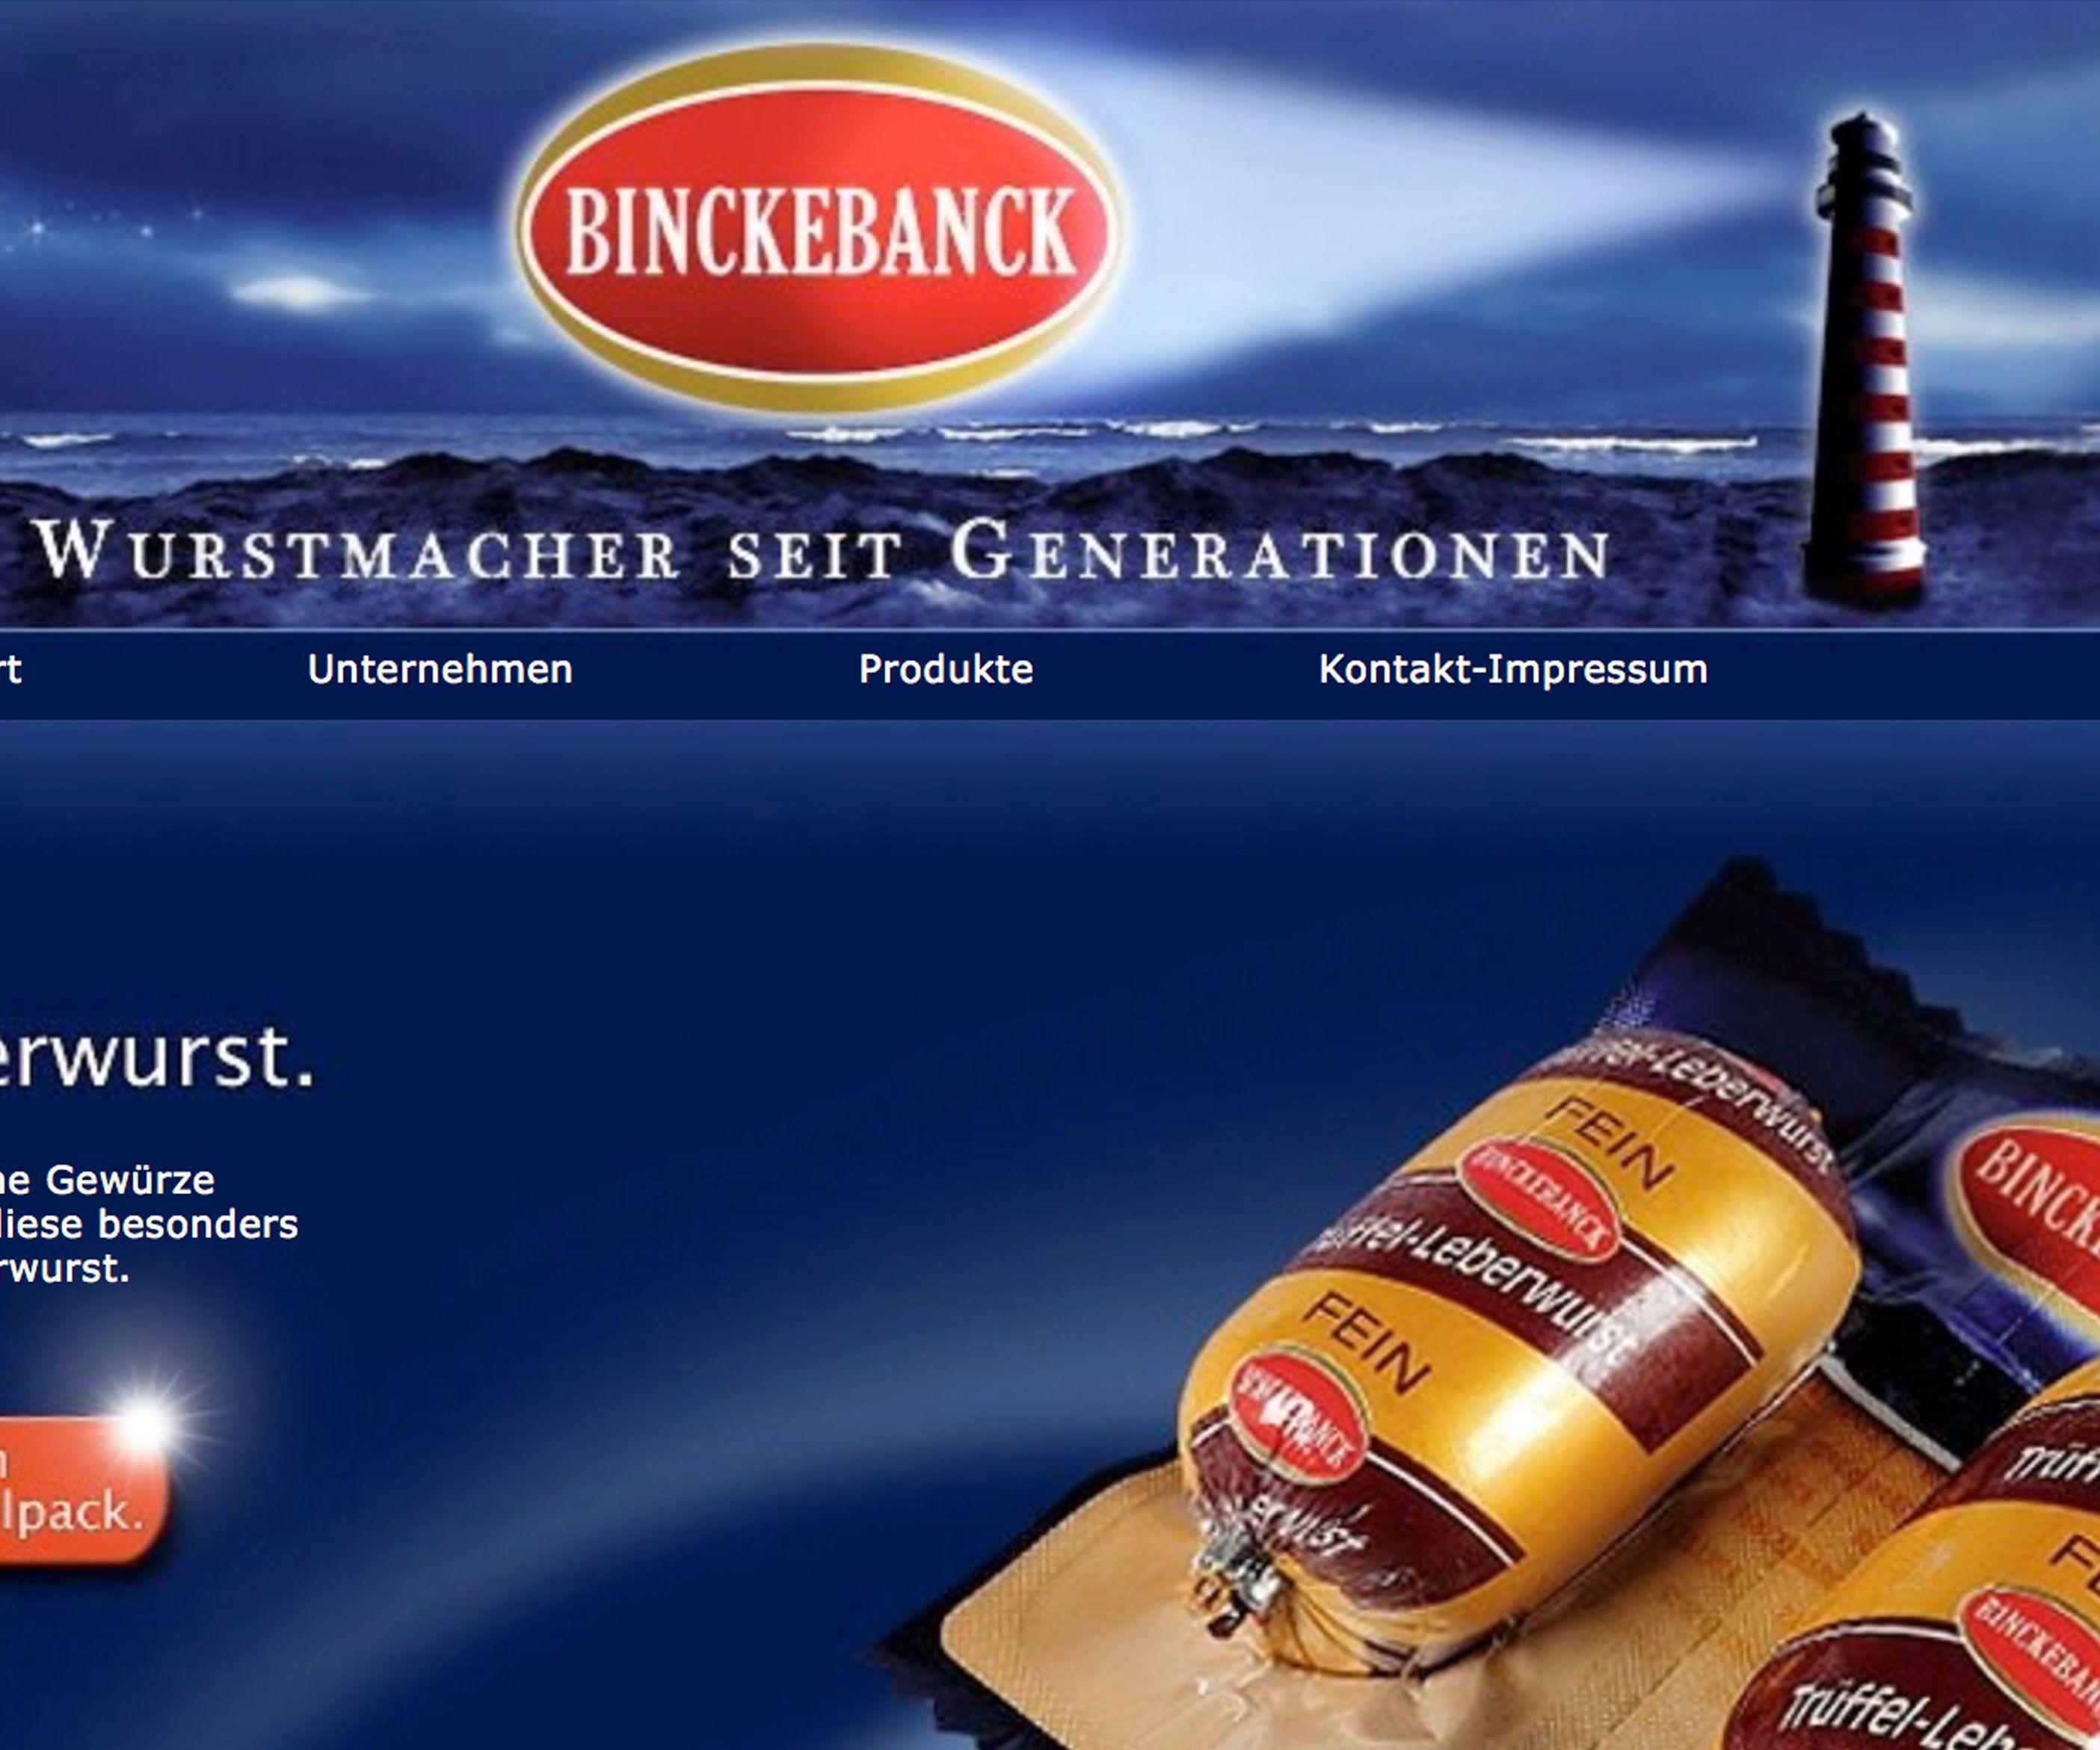 Beispielbild: www.binckebanck.de